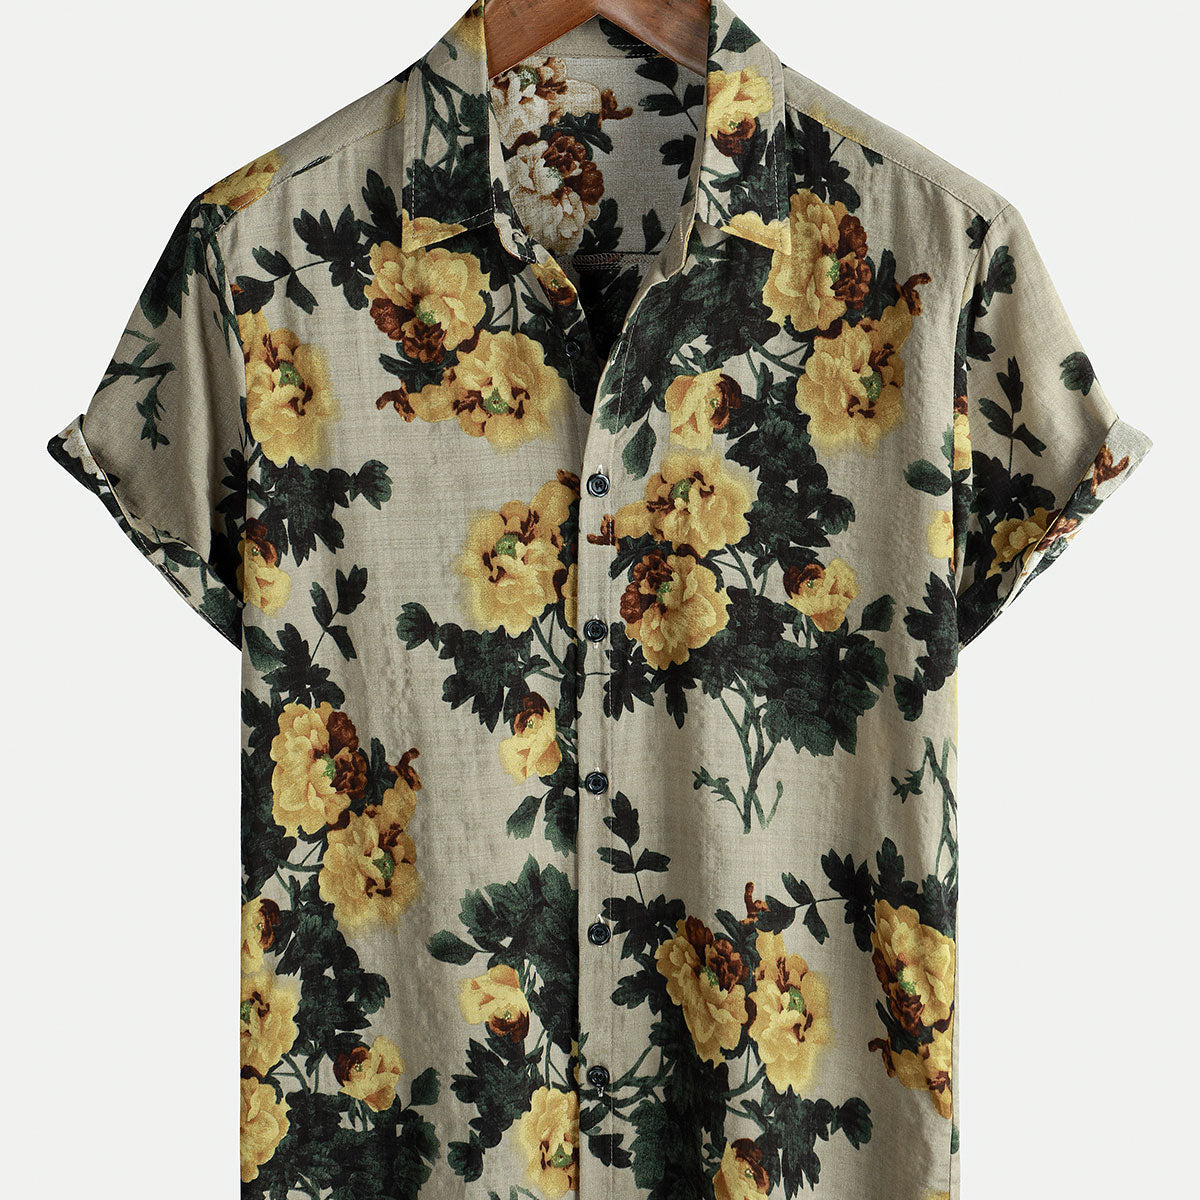 Chemise boutonnée à manches courtes pour hommes, jaune, à fleurs, Vintage, vacances, plage